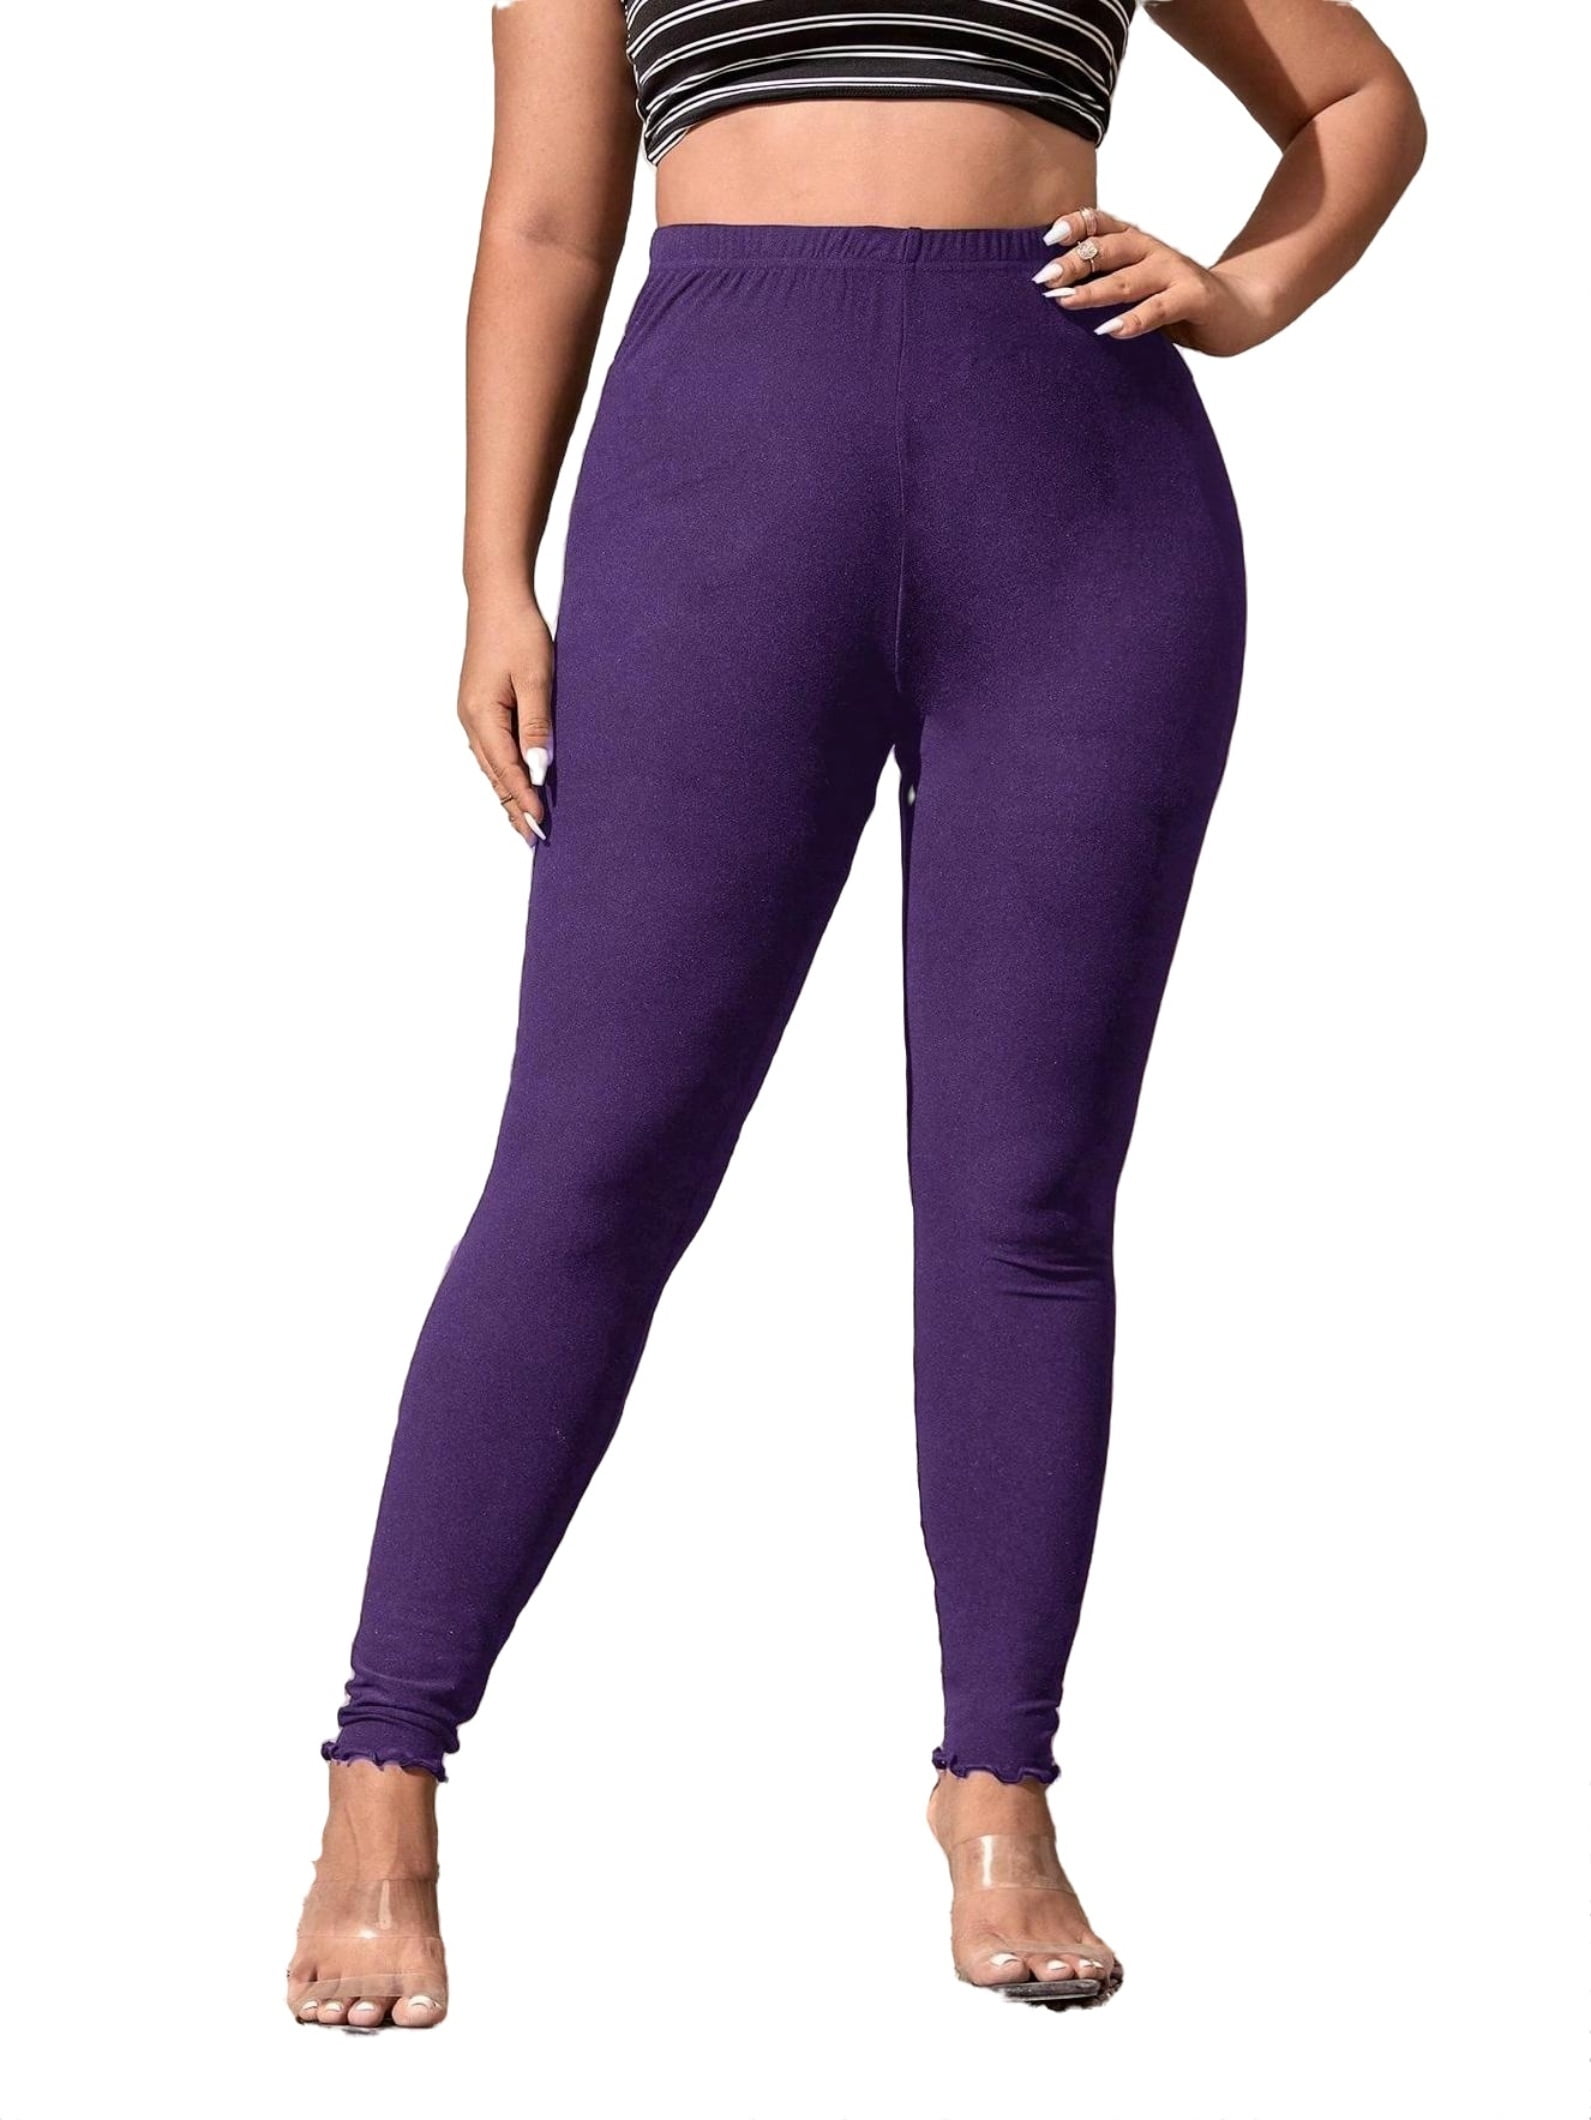 Southwest - Purple | Plus Size Leggings